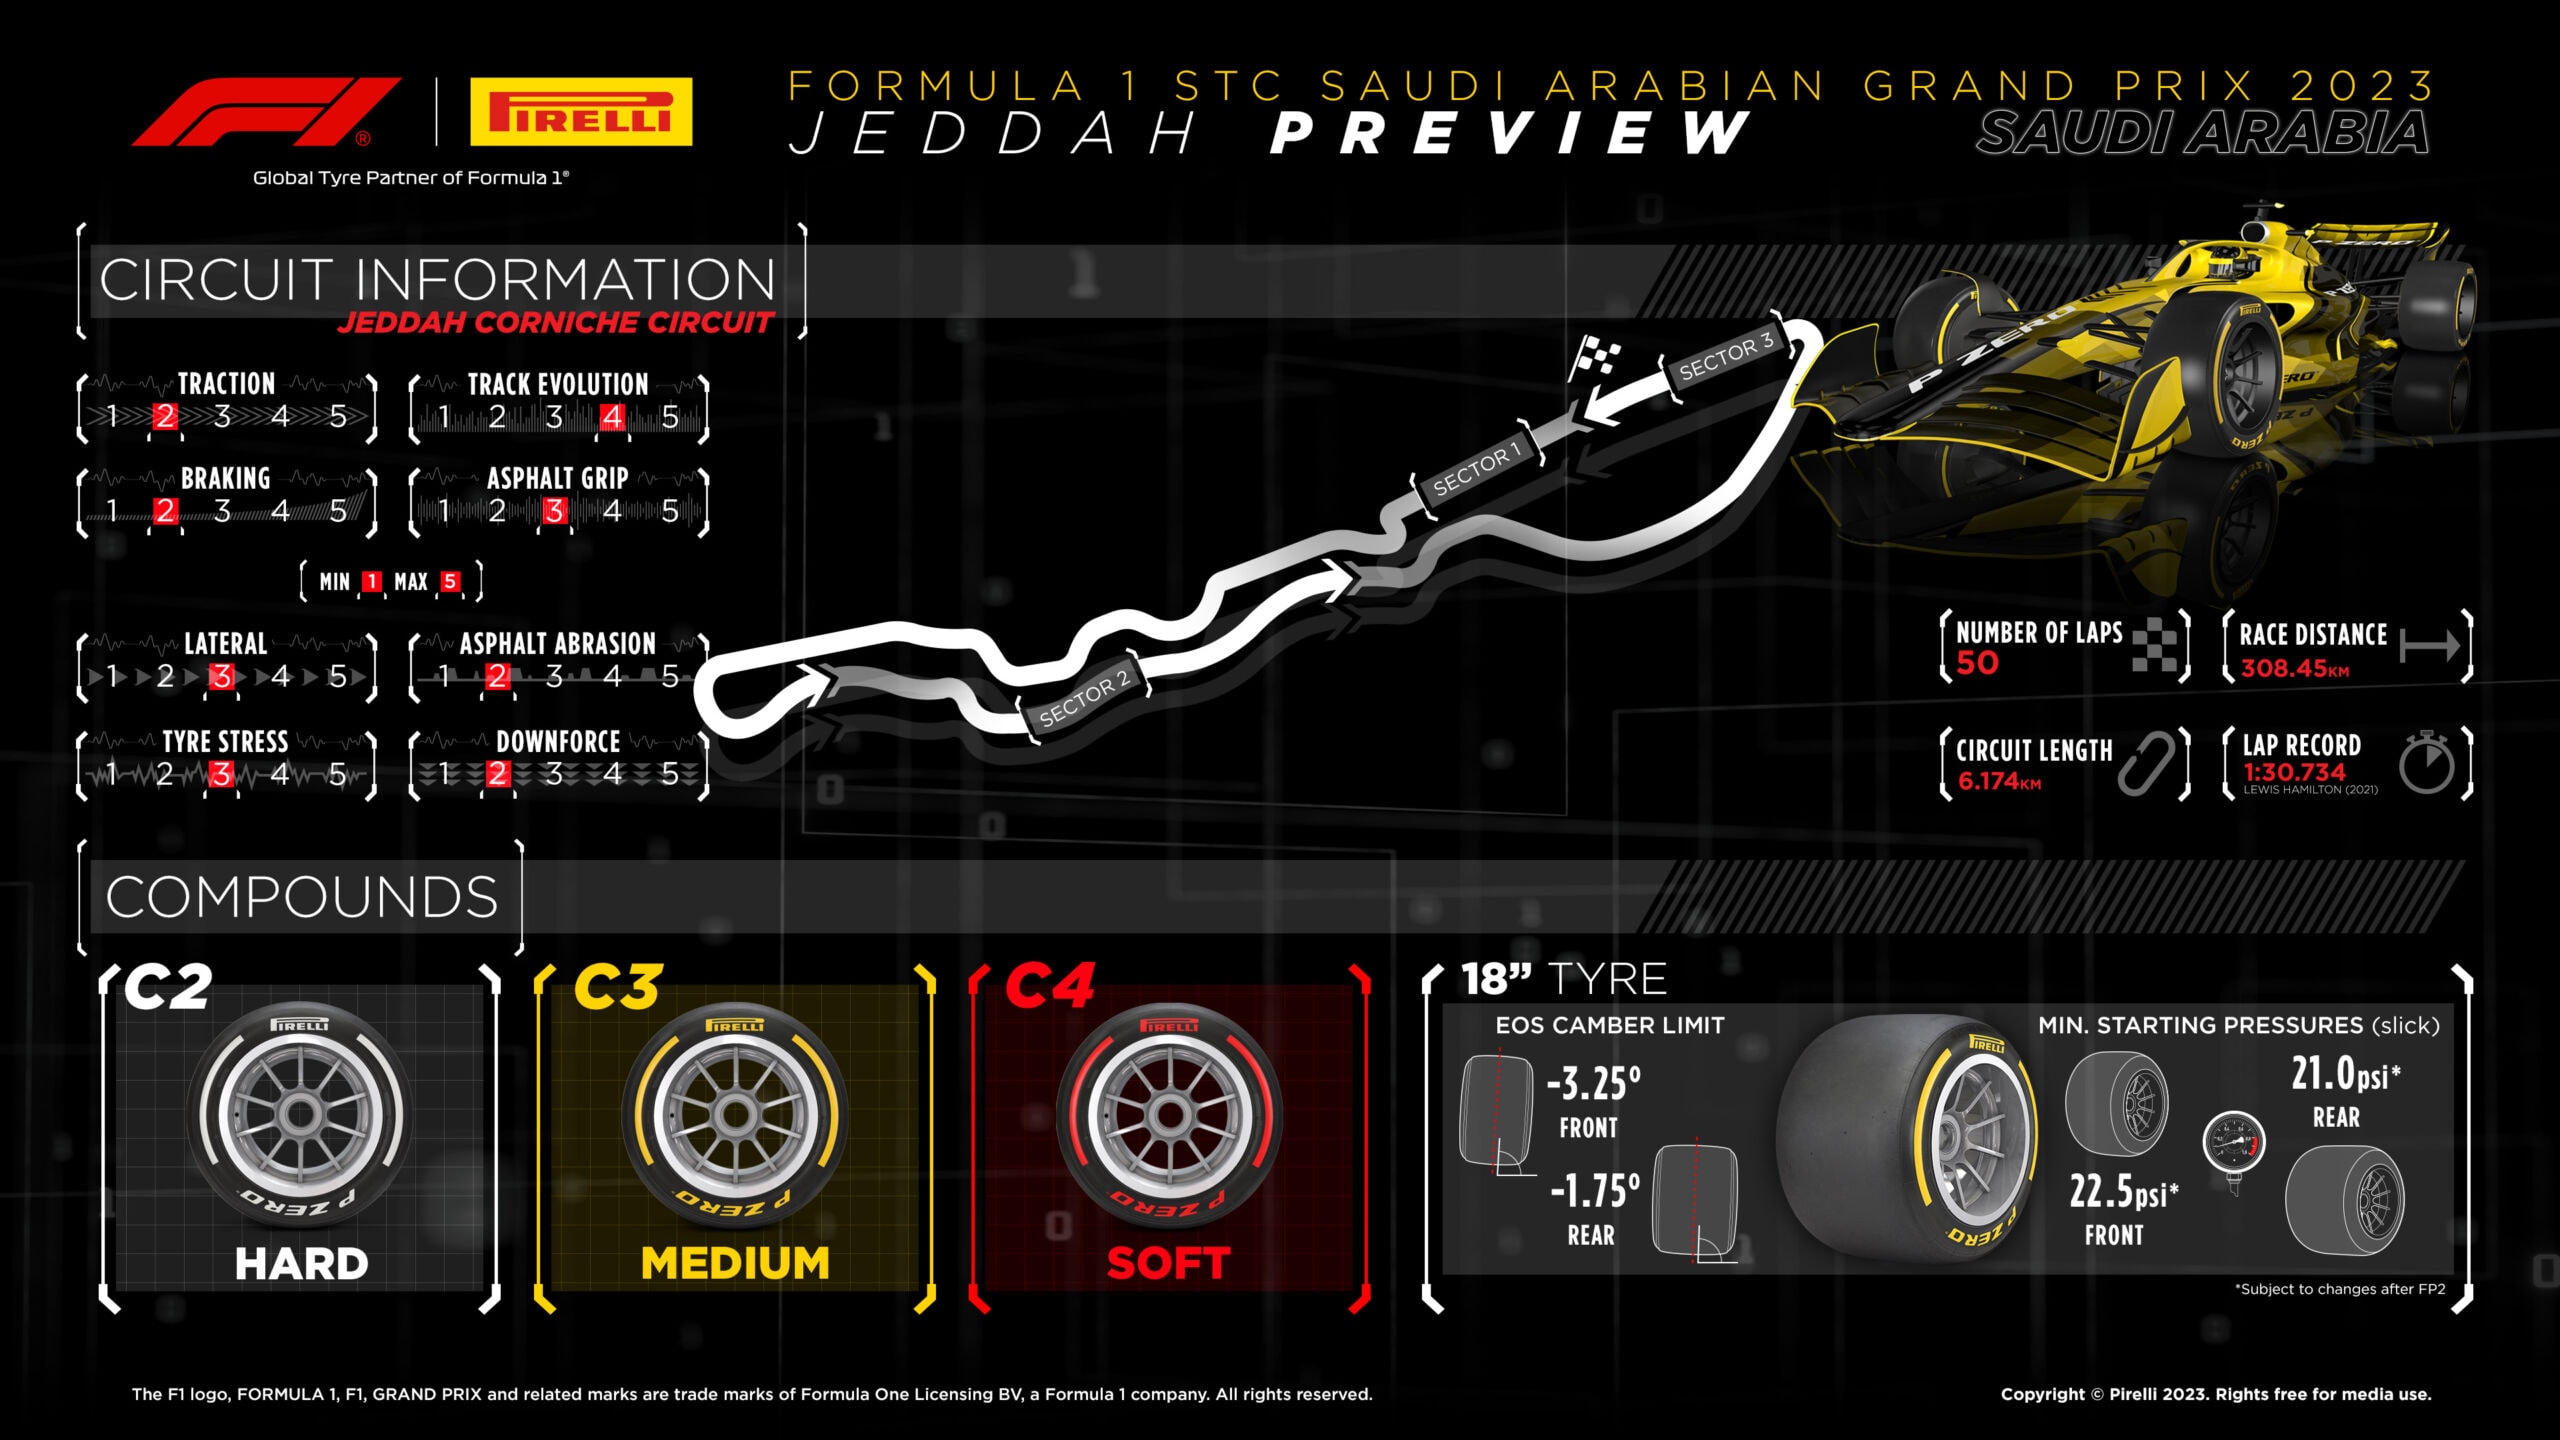 2023 Saudi Arabia Grand Prix Tyre Compounds Graphic